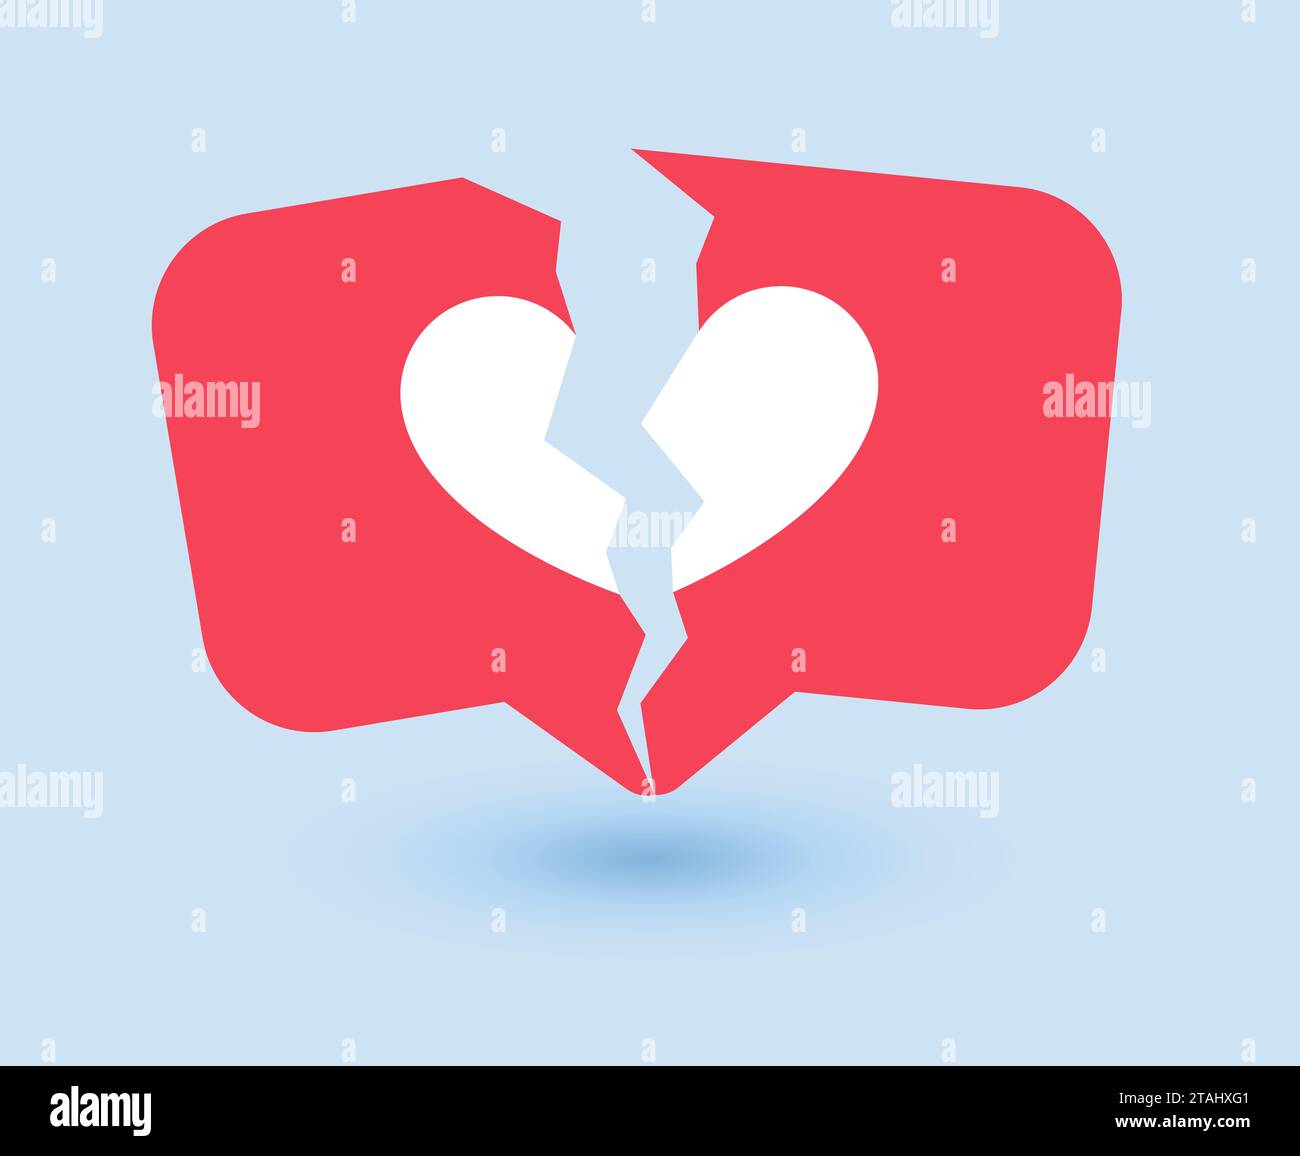 Abneigung Schild mit gebrochenem Herzen, Social Media Icon mit Riss, Antipathie Symbol, Vektor Stock Vektor